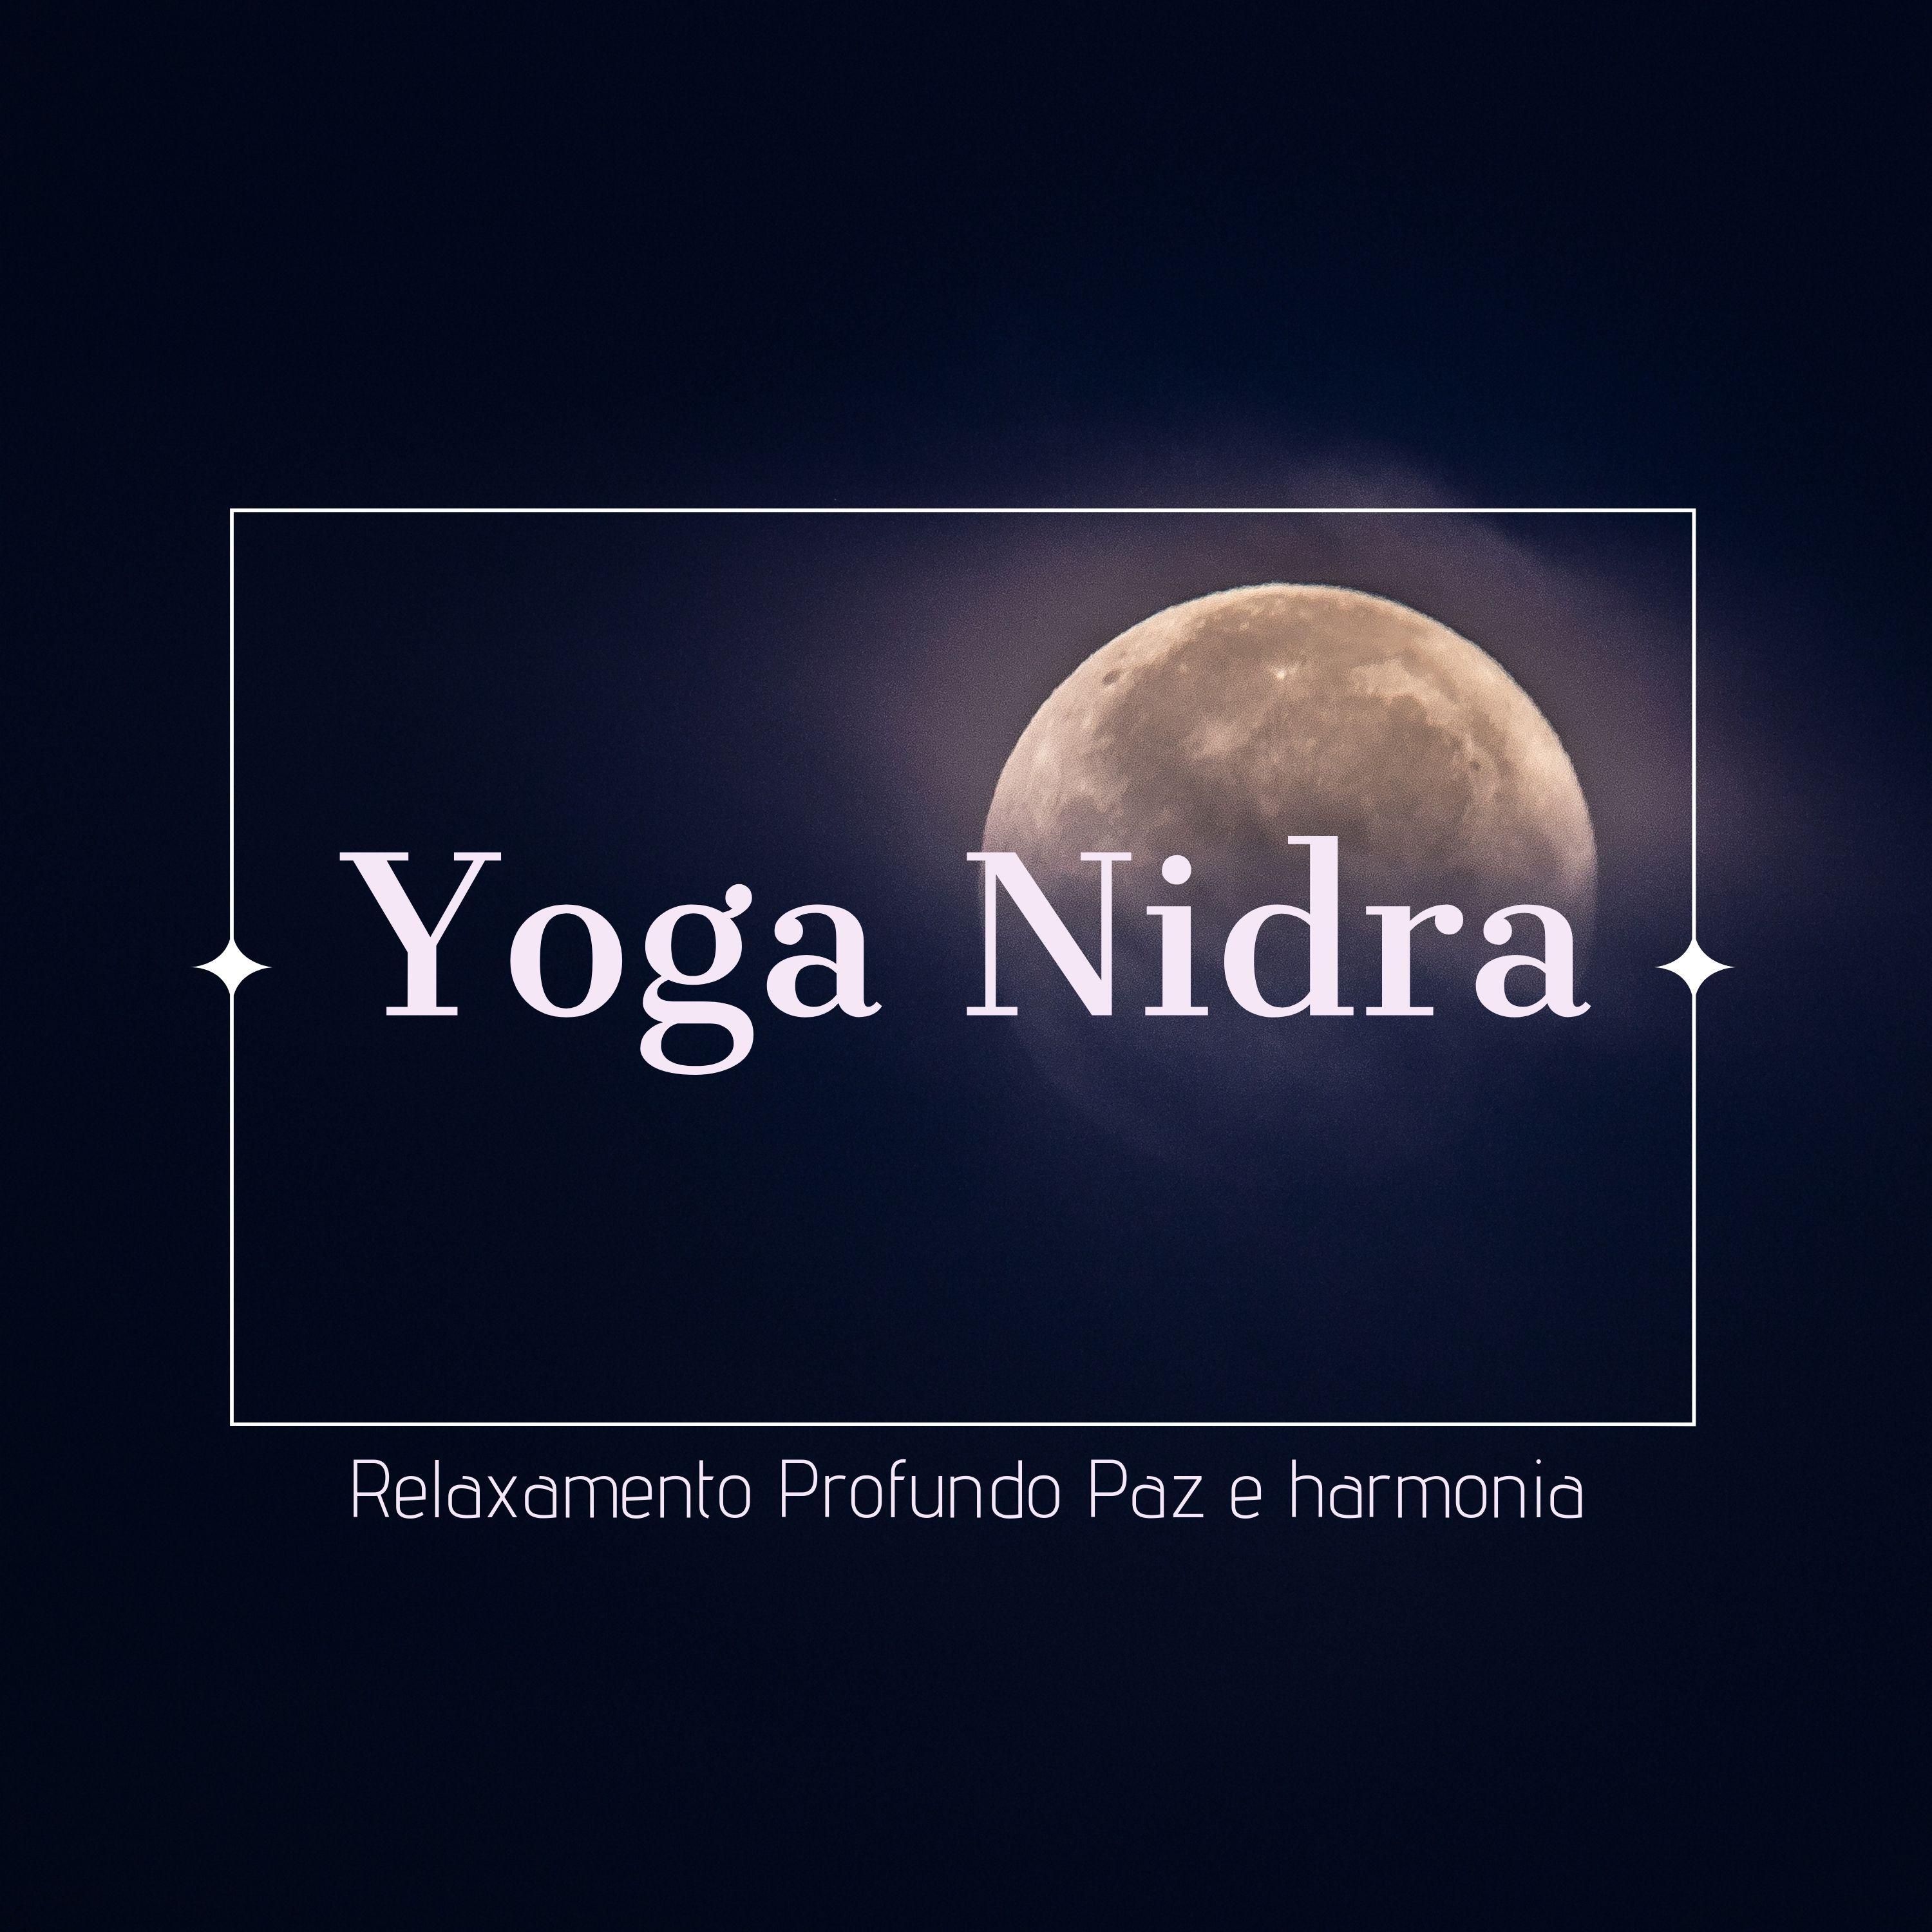 Yoga Nidra | Relaxamento Profundo, Paz e harmonia